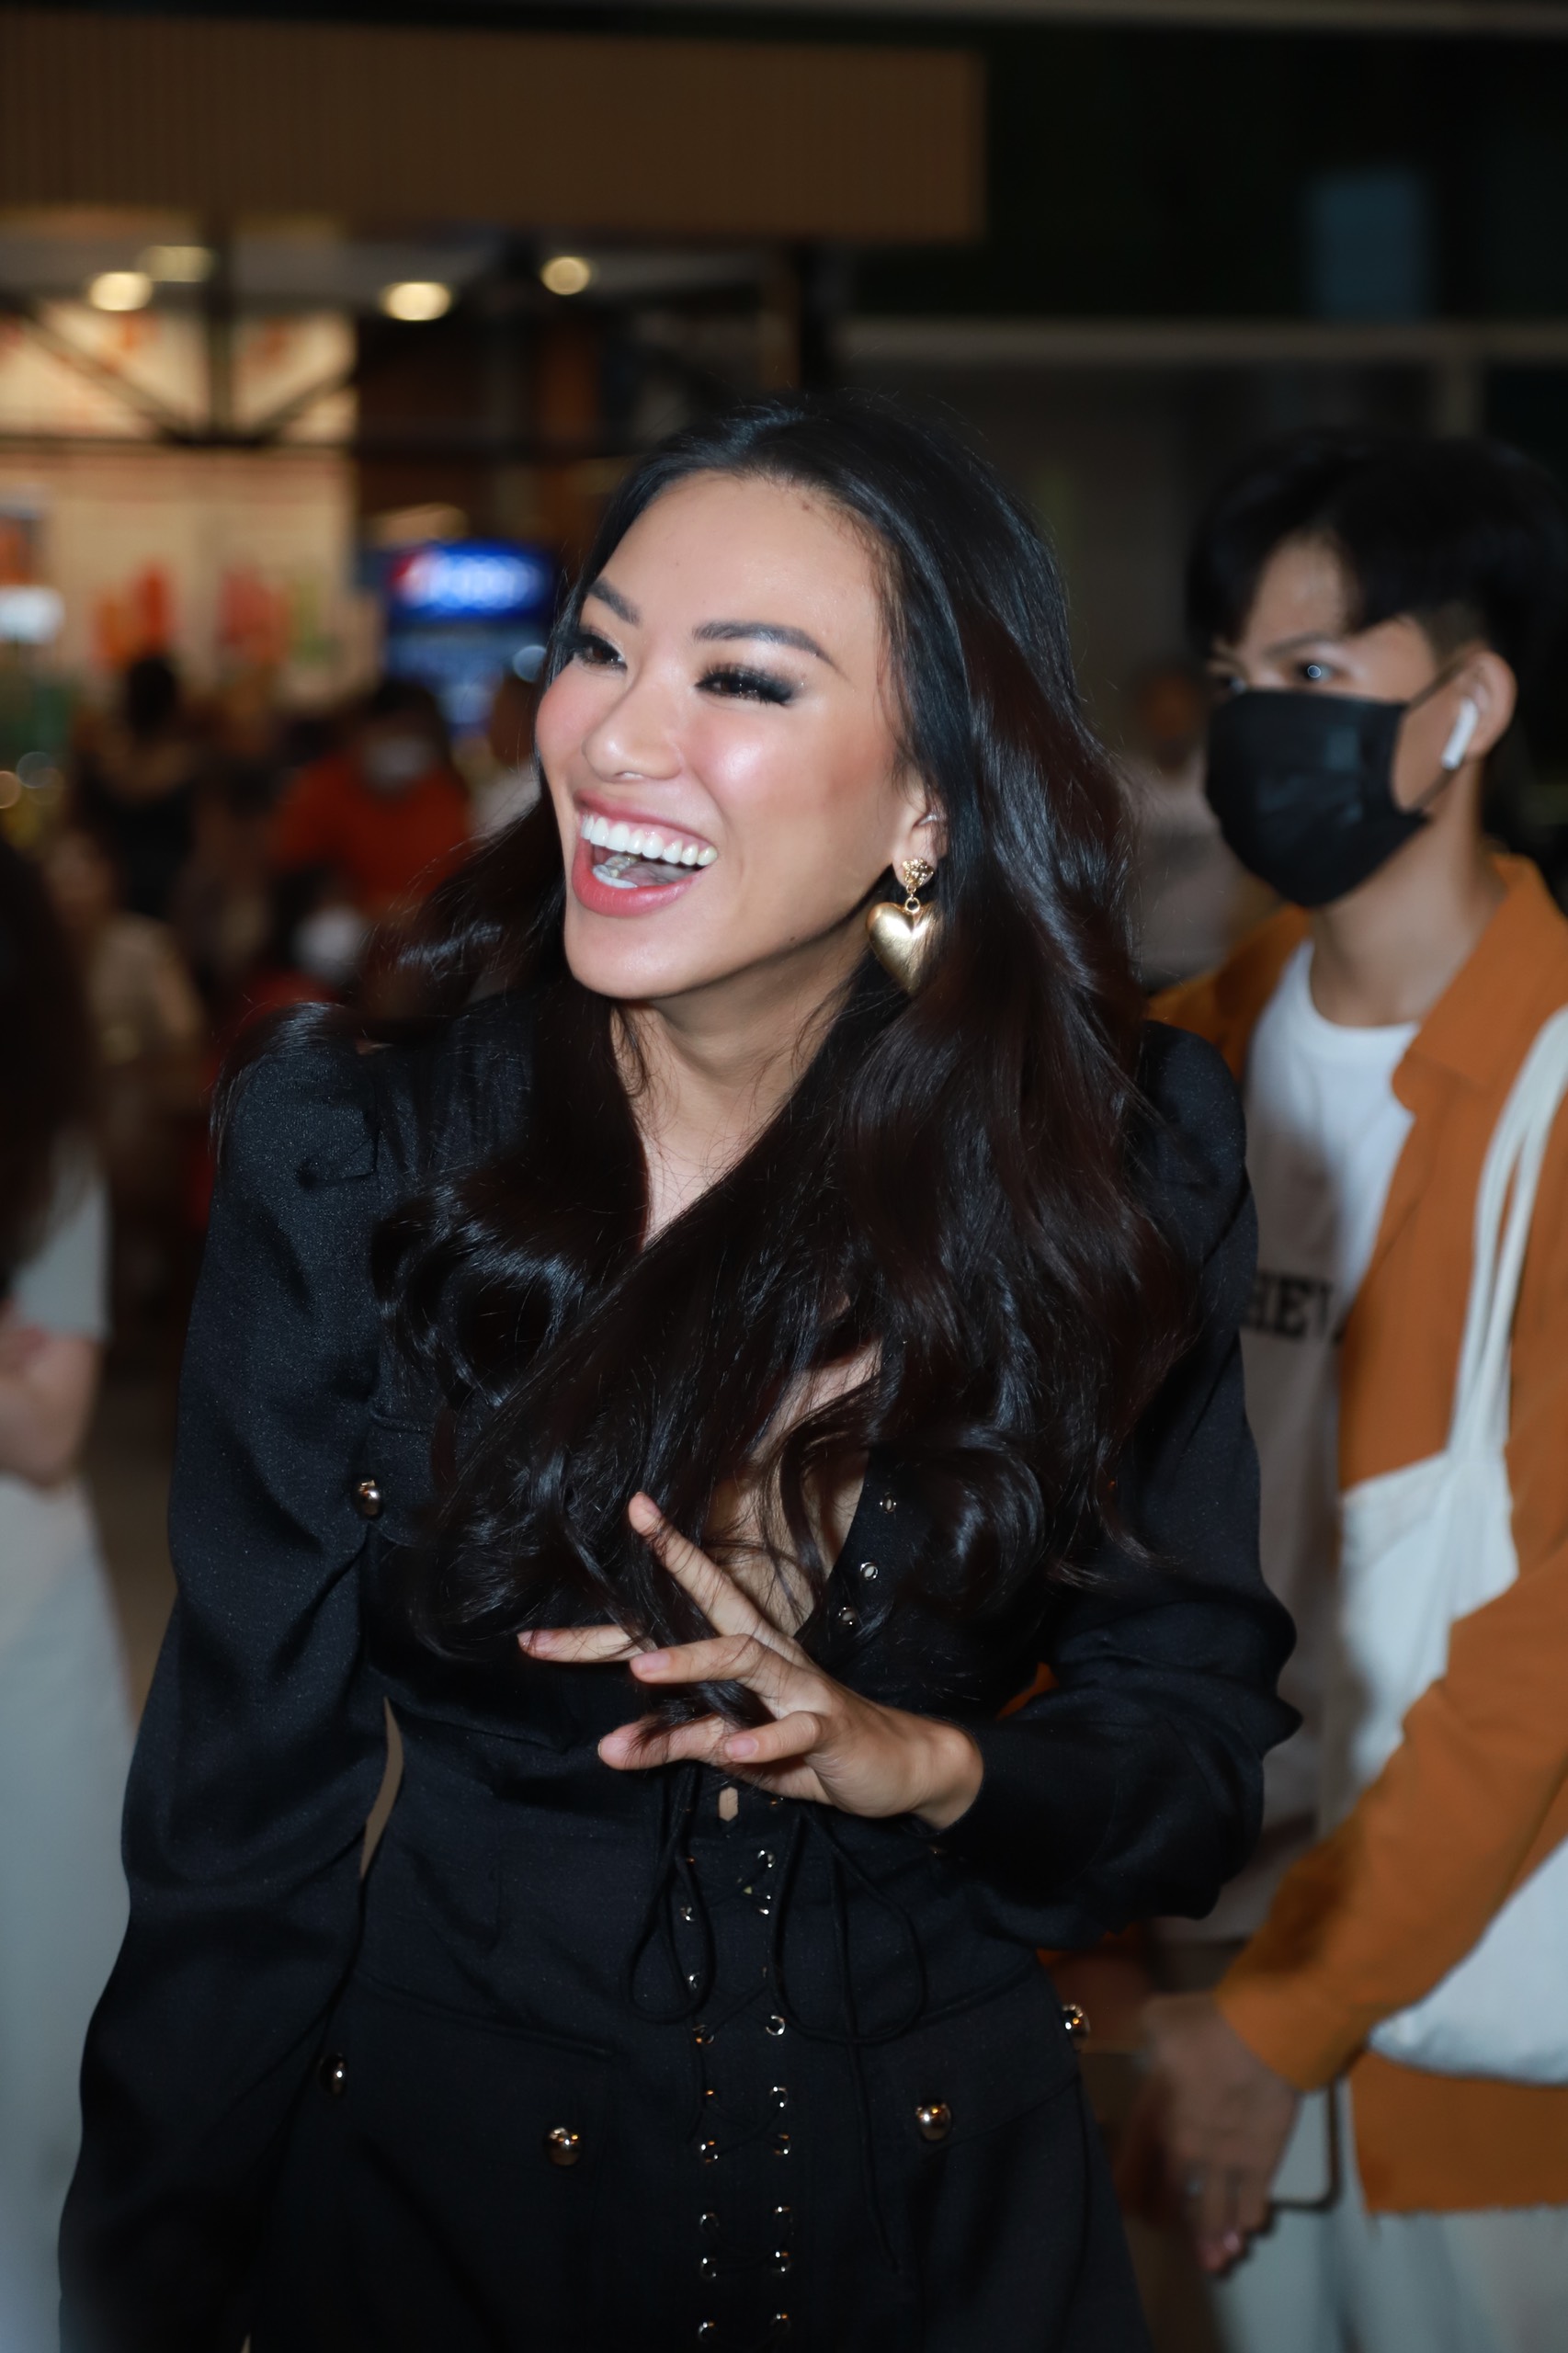 Đương kim Hoa hậu Hoàn vũ Harnaaz Kaur Sandhu đã đến Việt Nam, Á hậu Kim Duyên và fan tiếp đón nồng nhiệt - ảnh 8